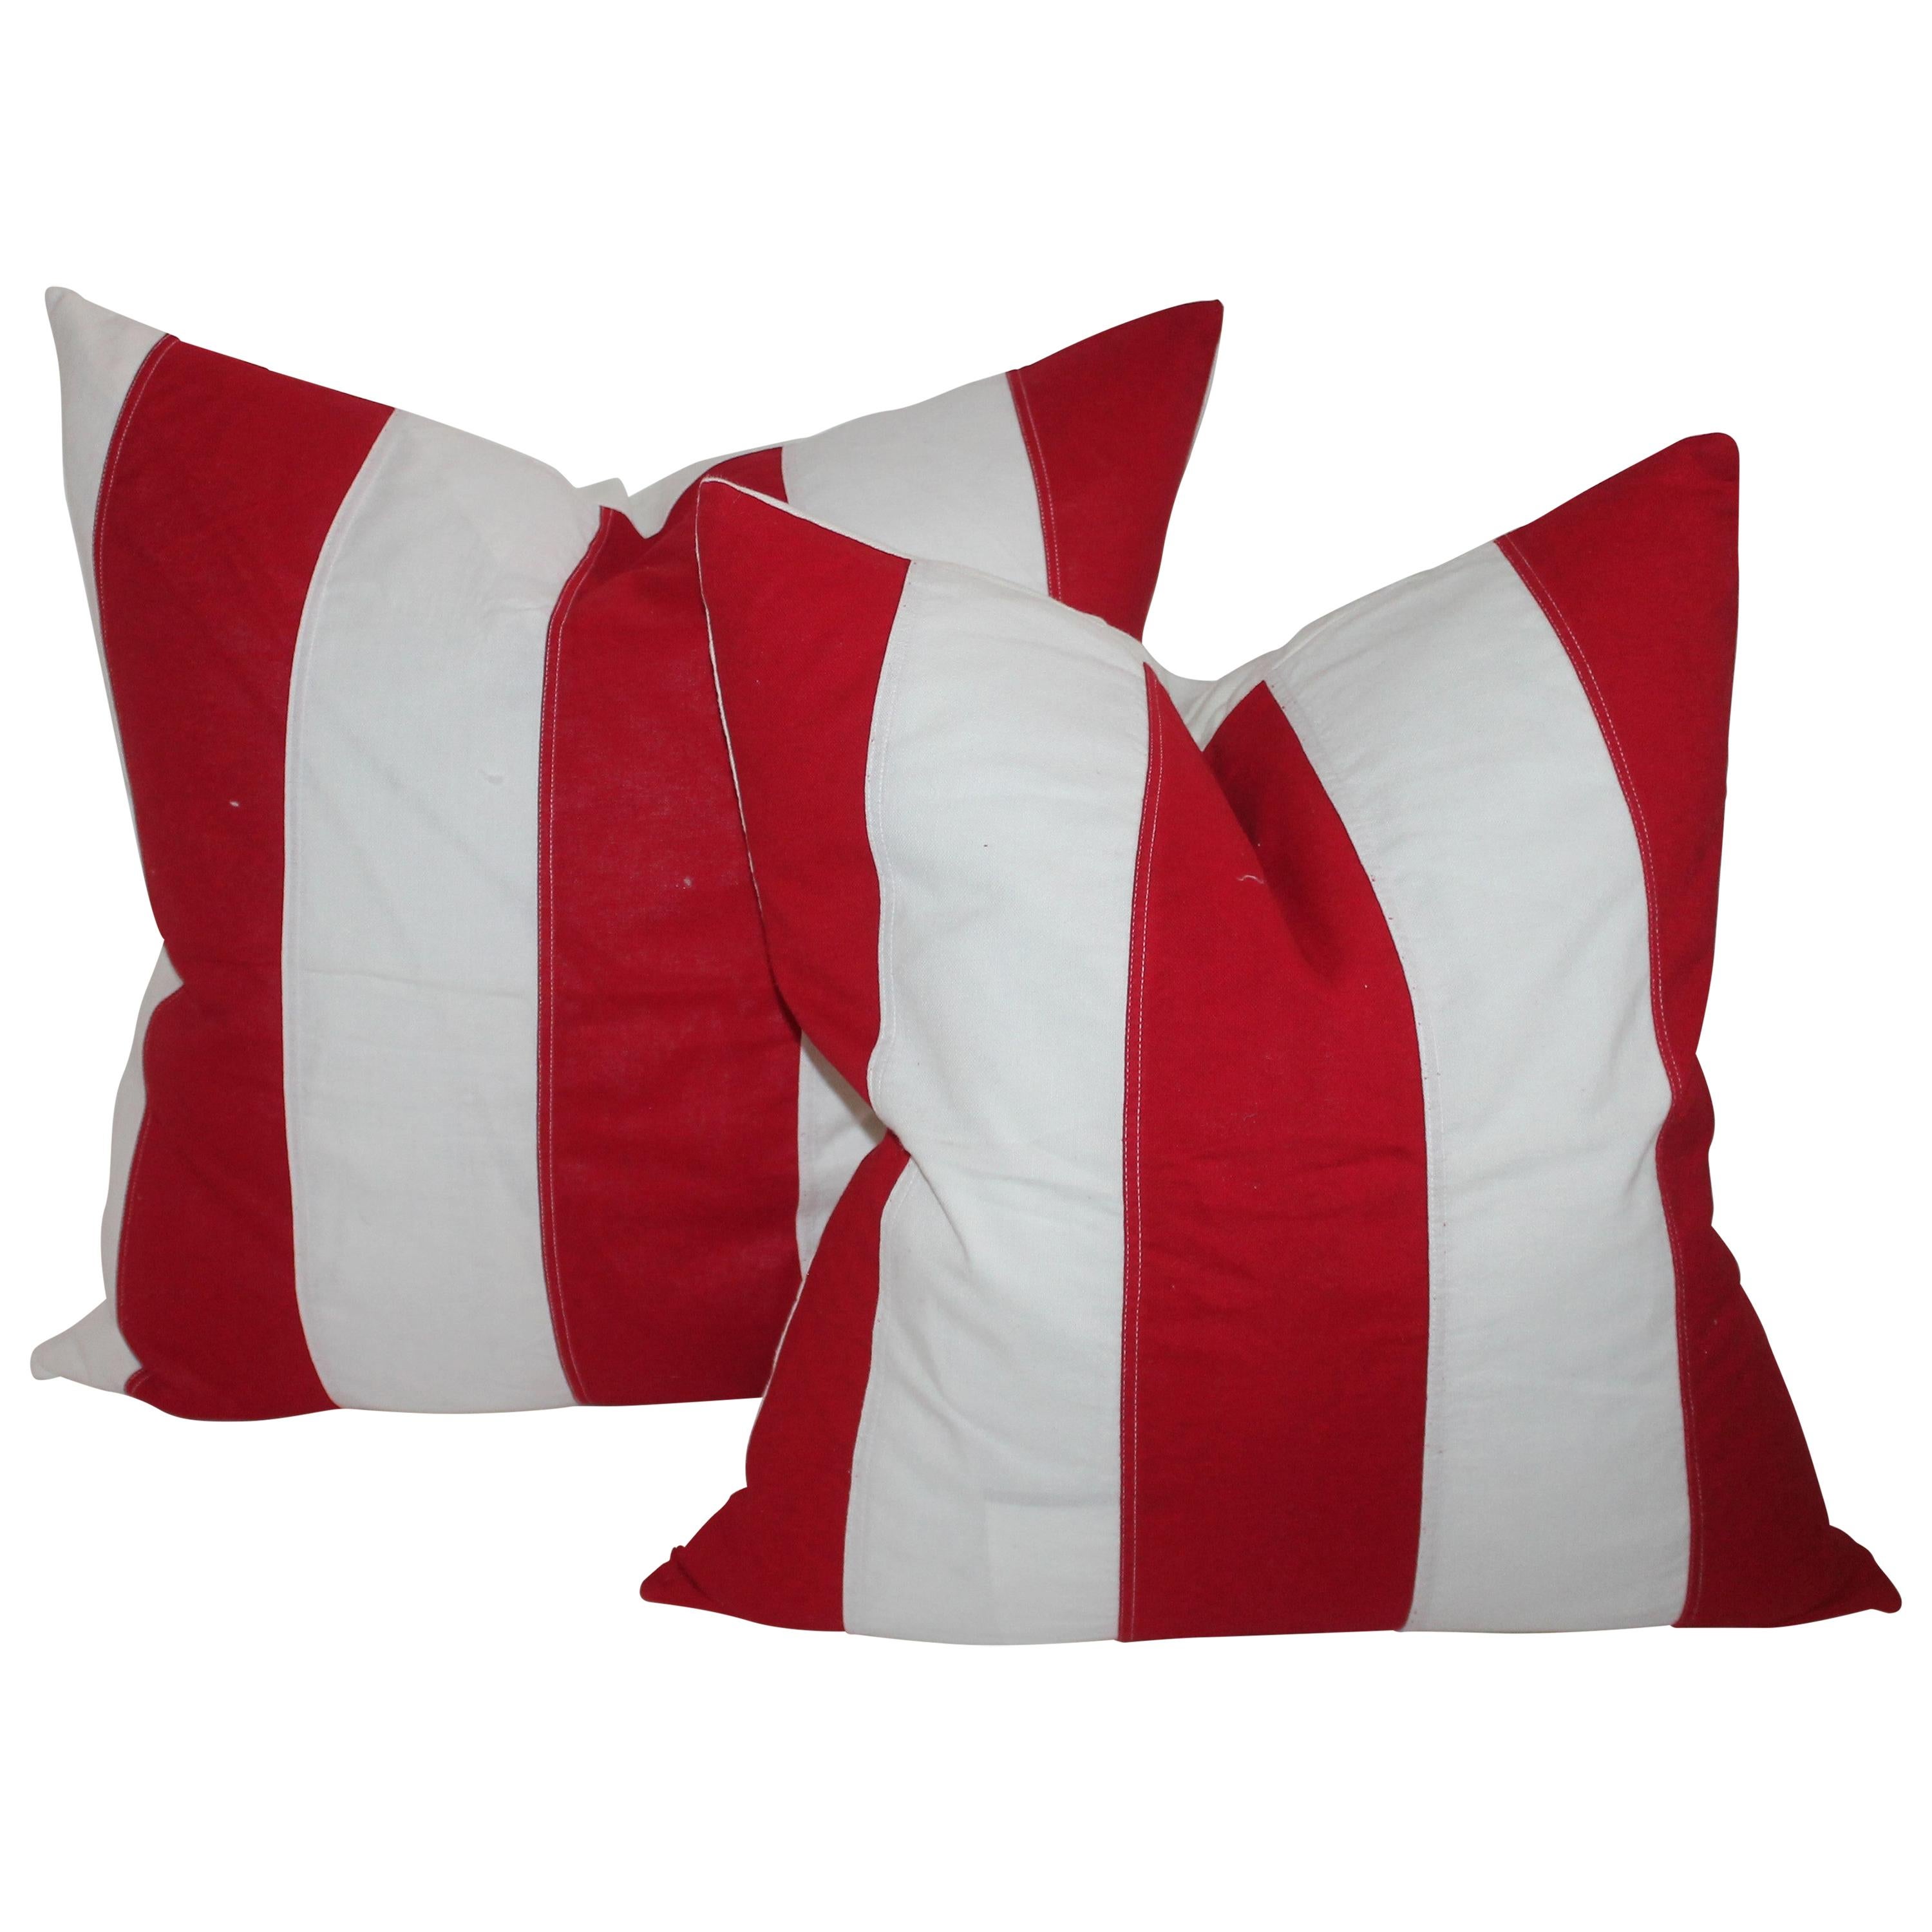 Coussins vintage à rayures rouges et blanches représentant des drapeaux